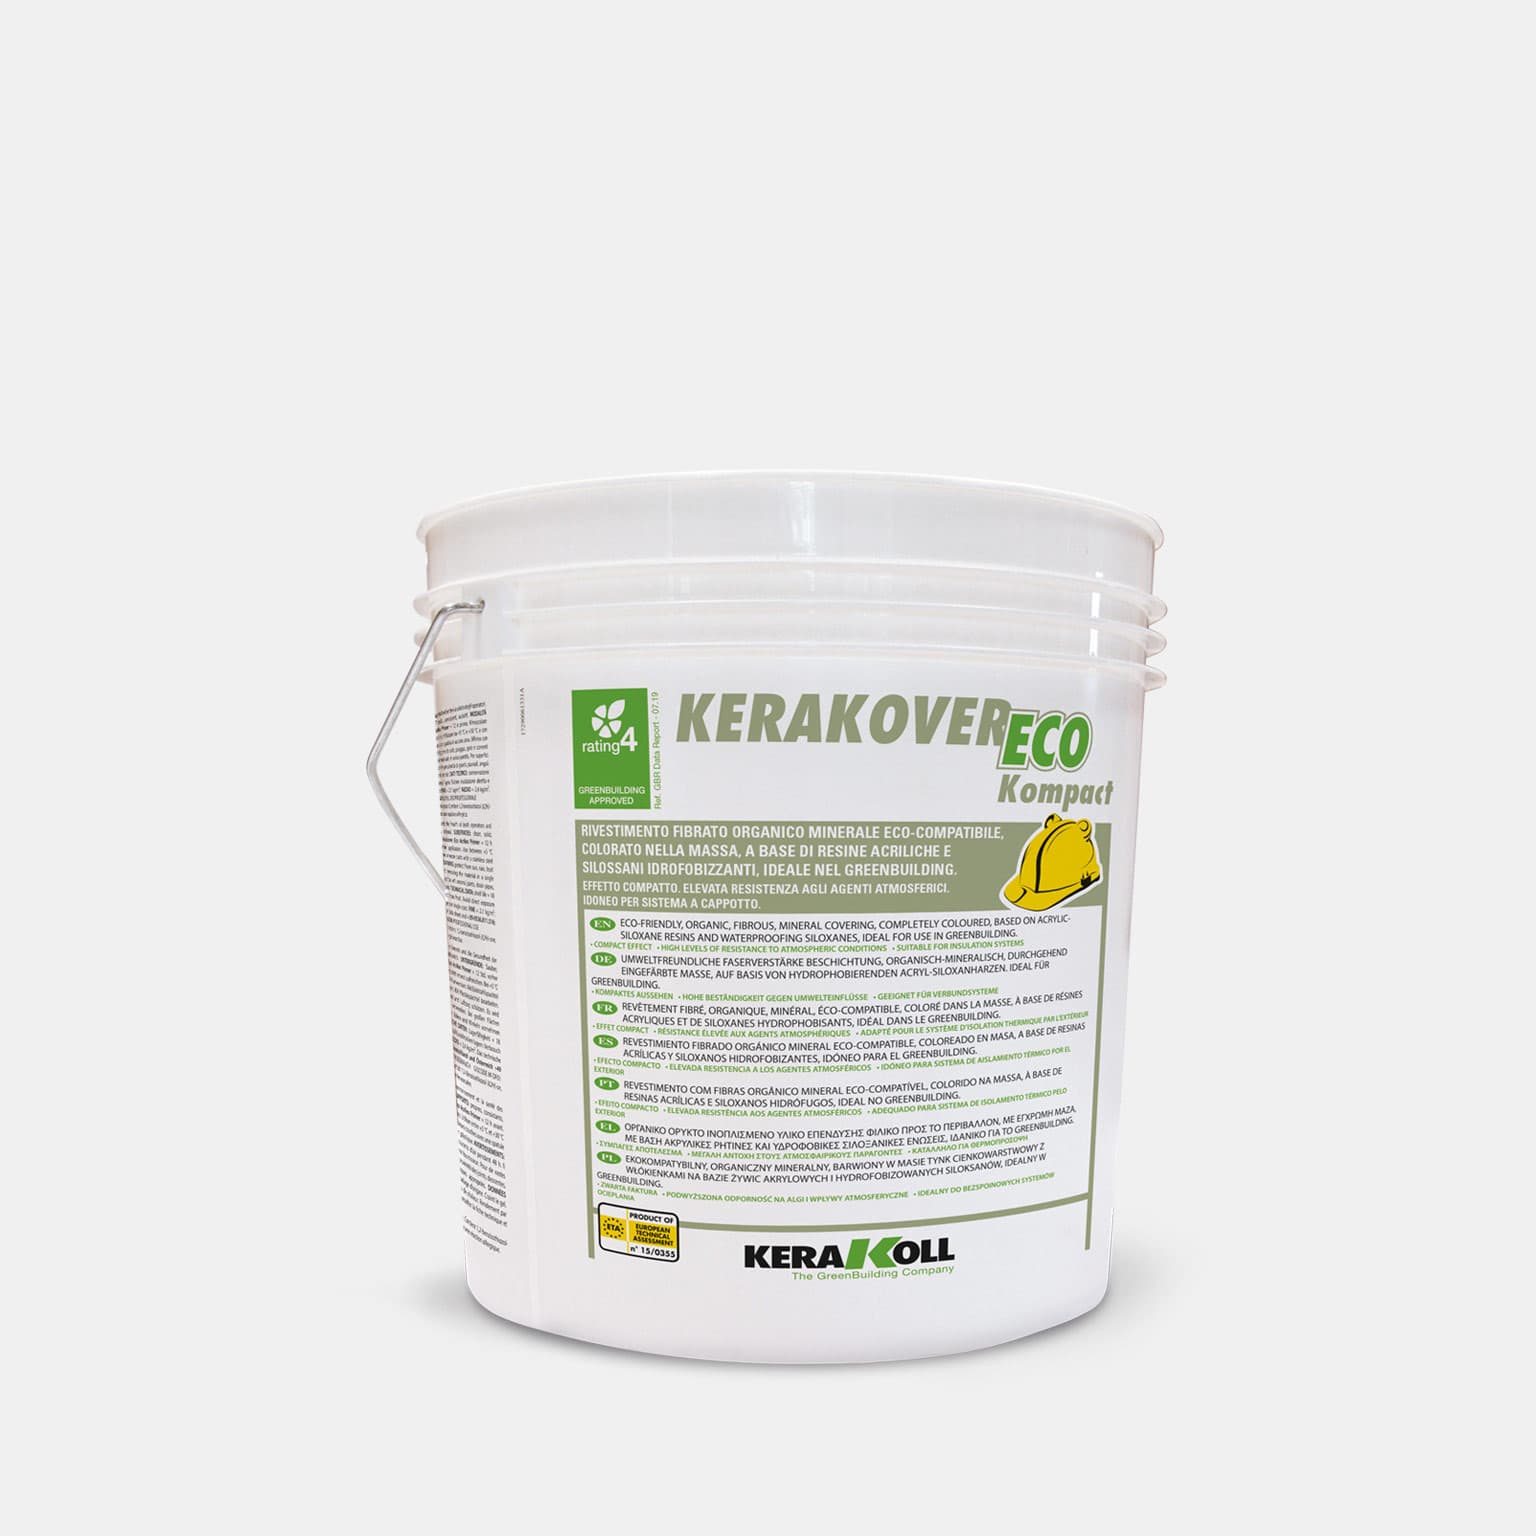 Kerakoll Kerakover Eco Kompact 2.0 ‑ 2.5: Öko‑kompatibilis szálerősített, szerves ásványi eredetű, anyagában színezett, víztaszító akril‑műgyanta és víztaszító sziloxán alapú, vizes bázisú nemesvakolat, ideális a GreenBuildingnél.